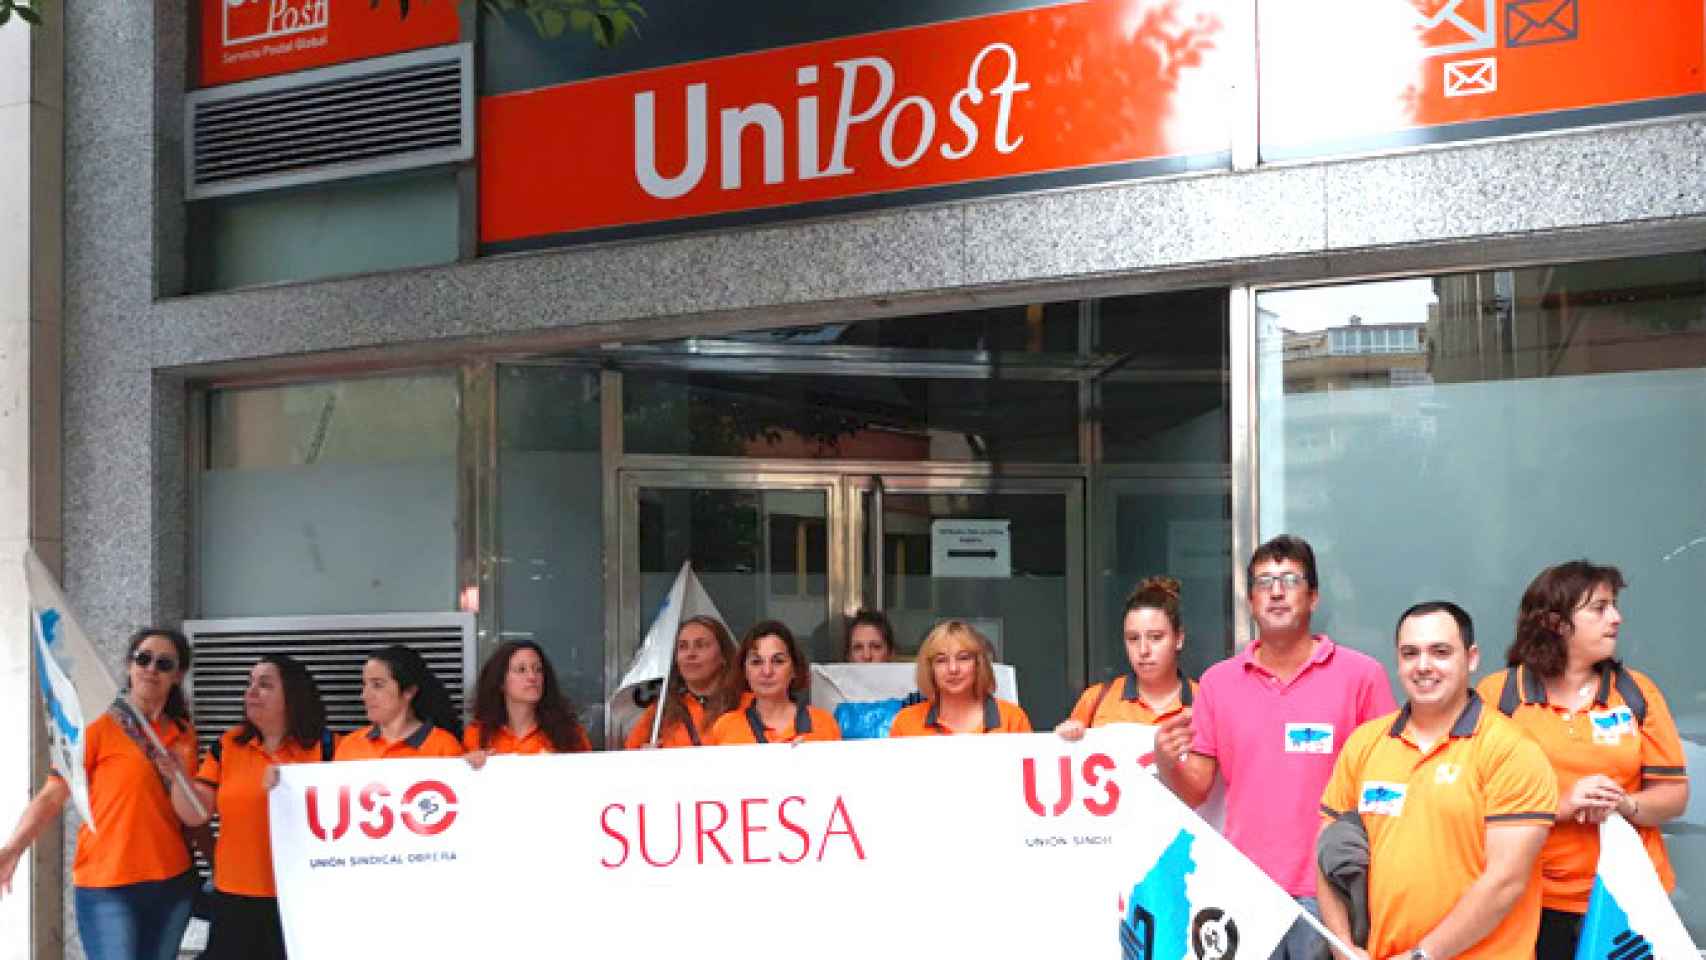 Imagen de la protesta contra Suresa en Gijón / USO